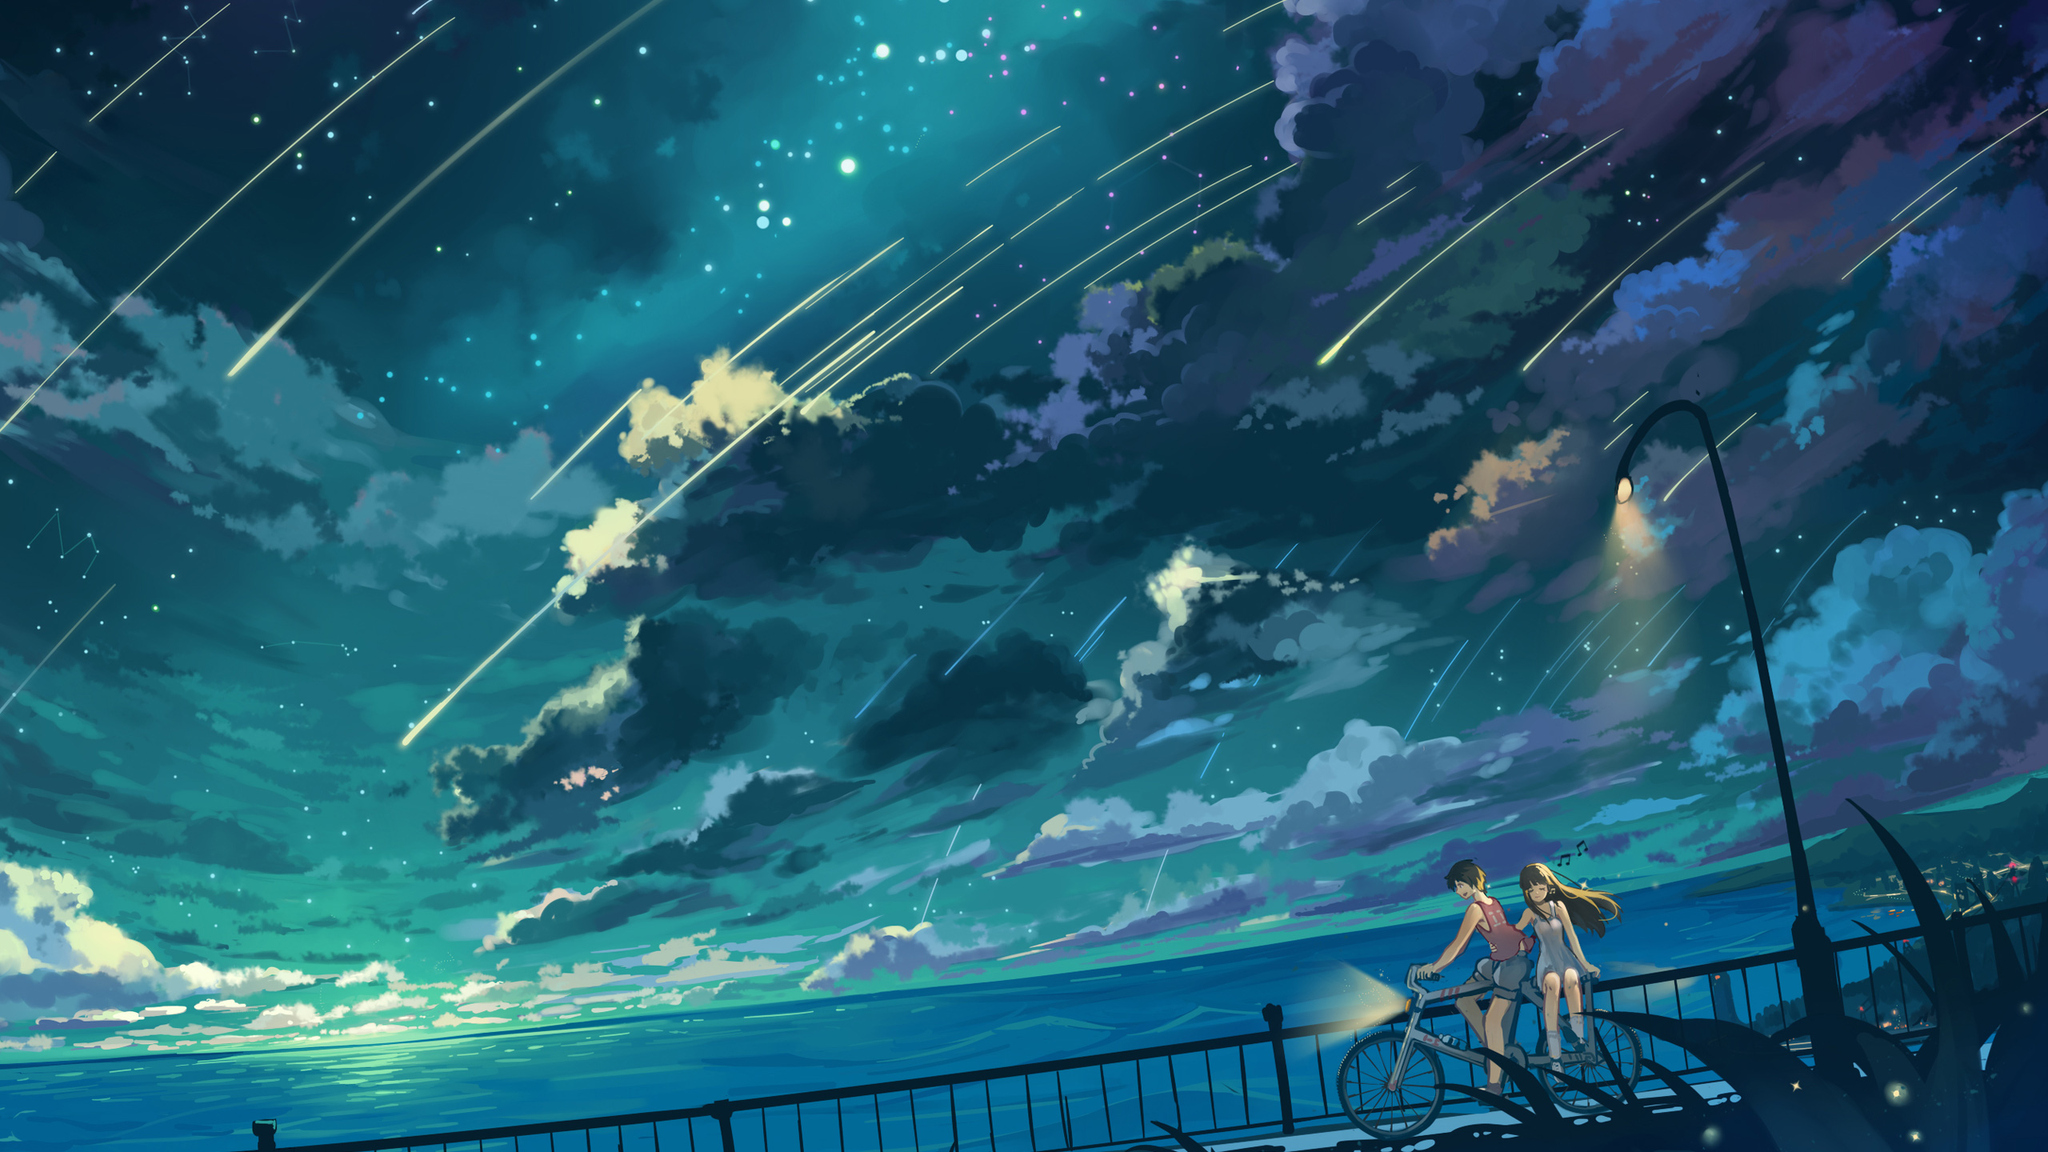 Hình ảnh của một cô gái anime đạp xe trên đám mây và dưới ánh sao sẽ khiến bạn thích thú. Cảnh vật tuyệt đẹp của bầu trời đêm đầy huyền ảo sẽ mang lại cho bạn một trải nghiệm khó quên.